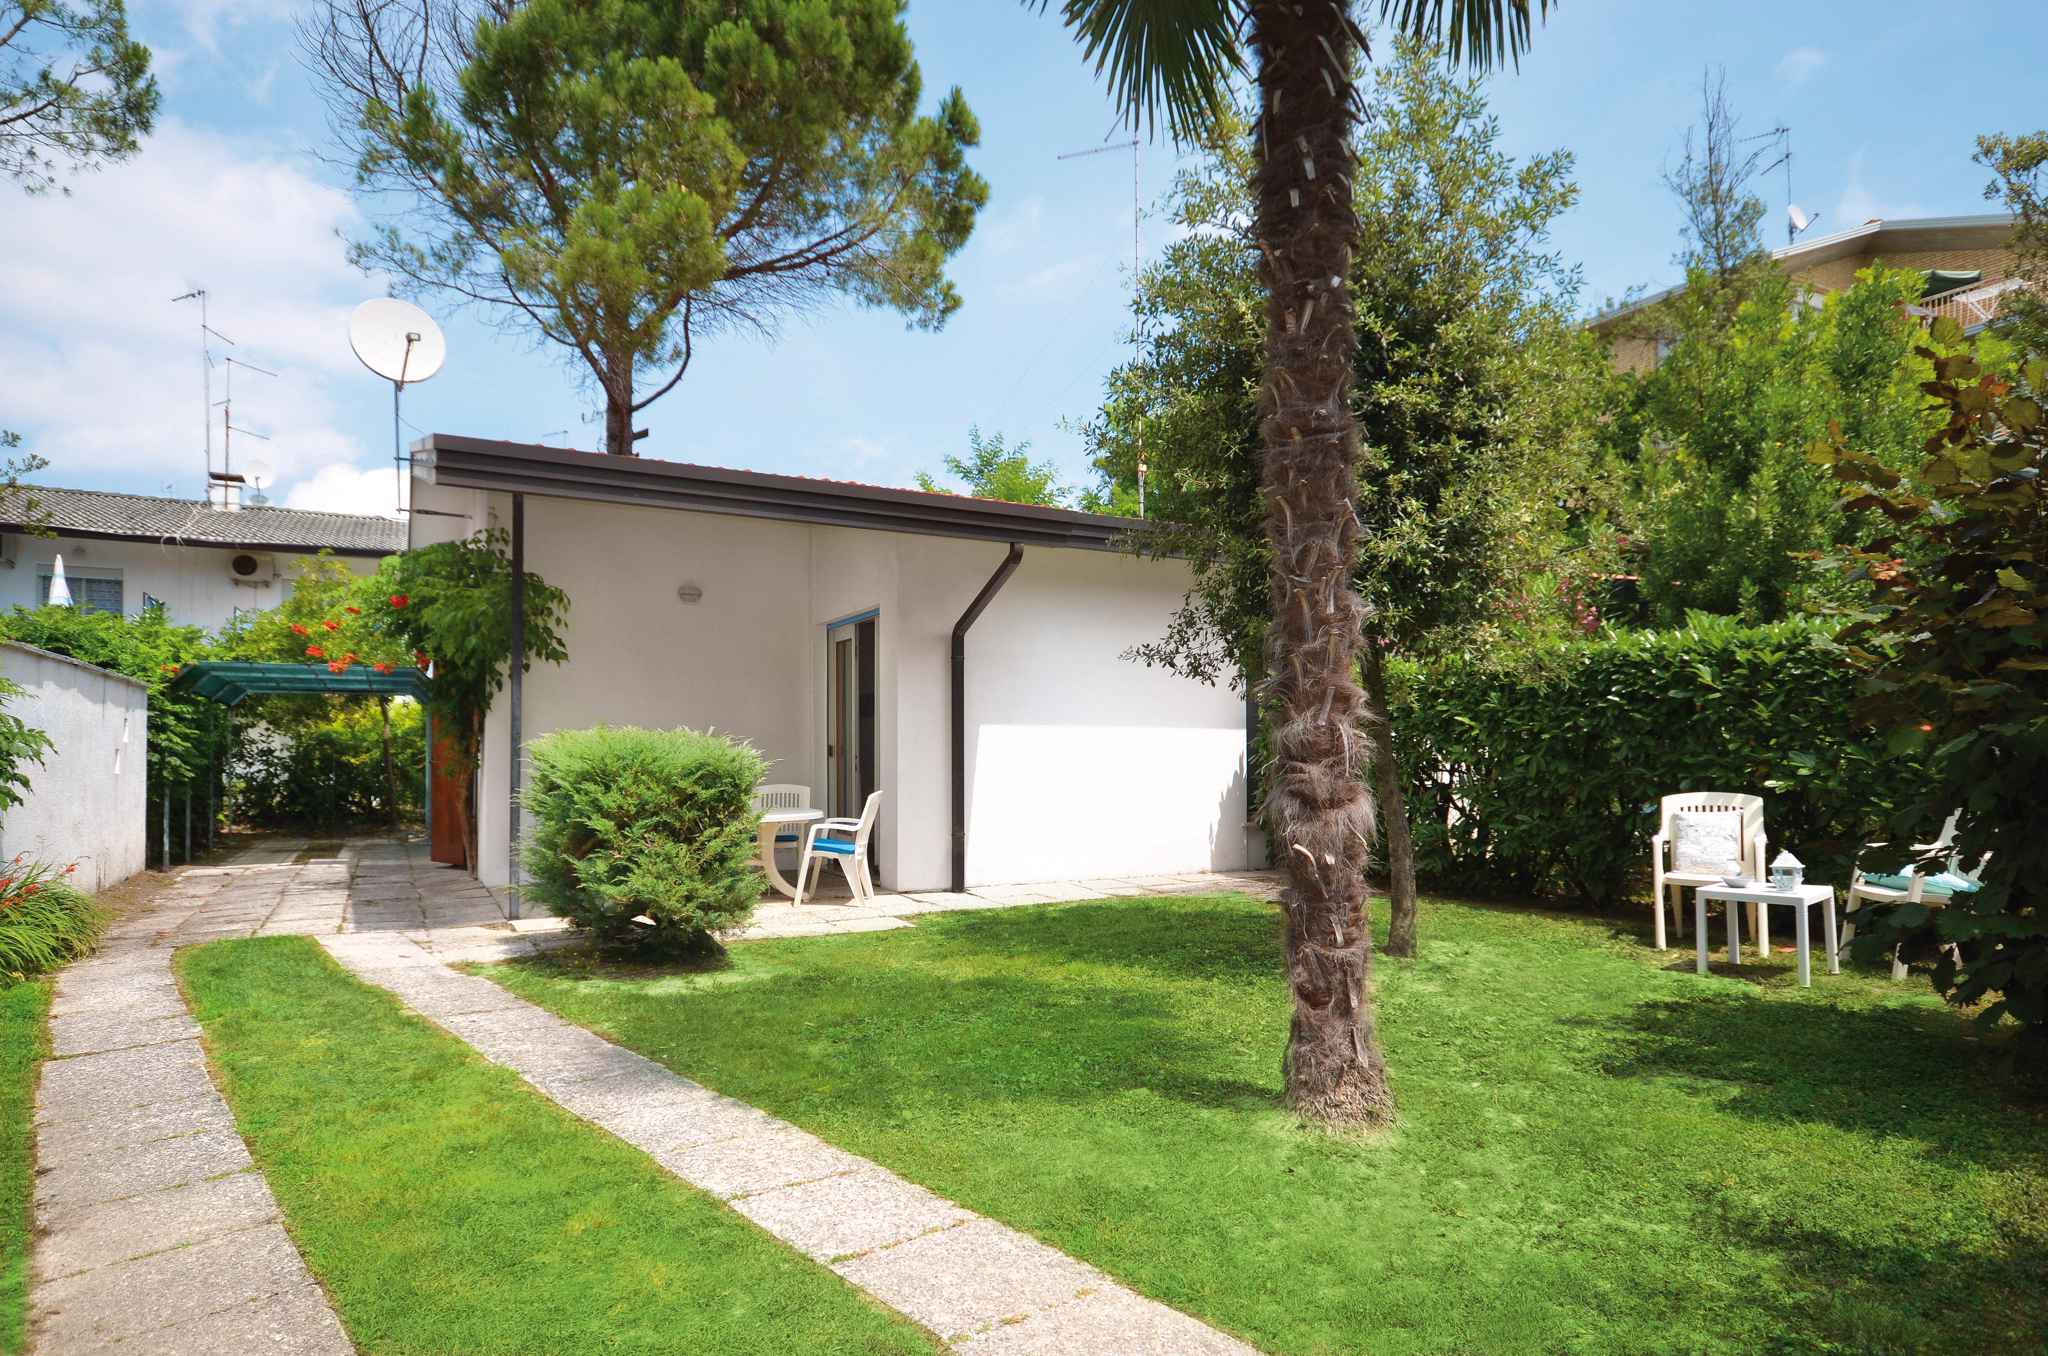 Villa in ruhiger Lage mit Garten inkl. Strandservi Ferienhaus in Bibione